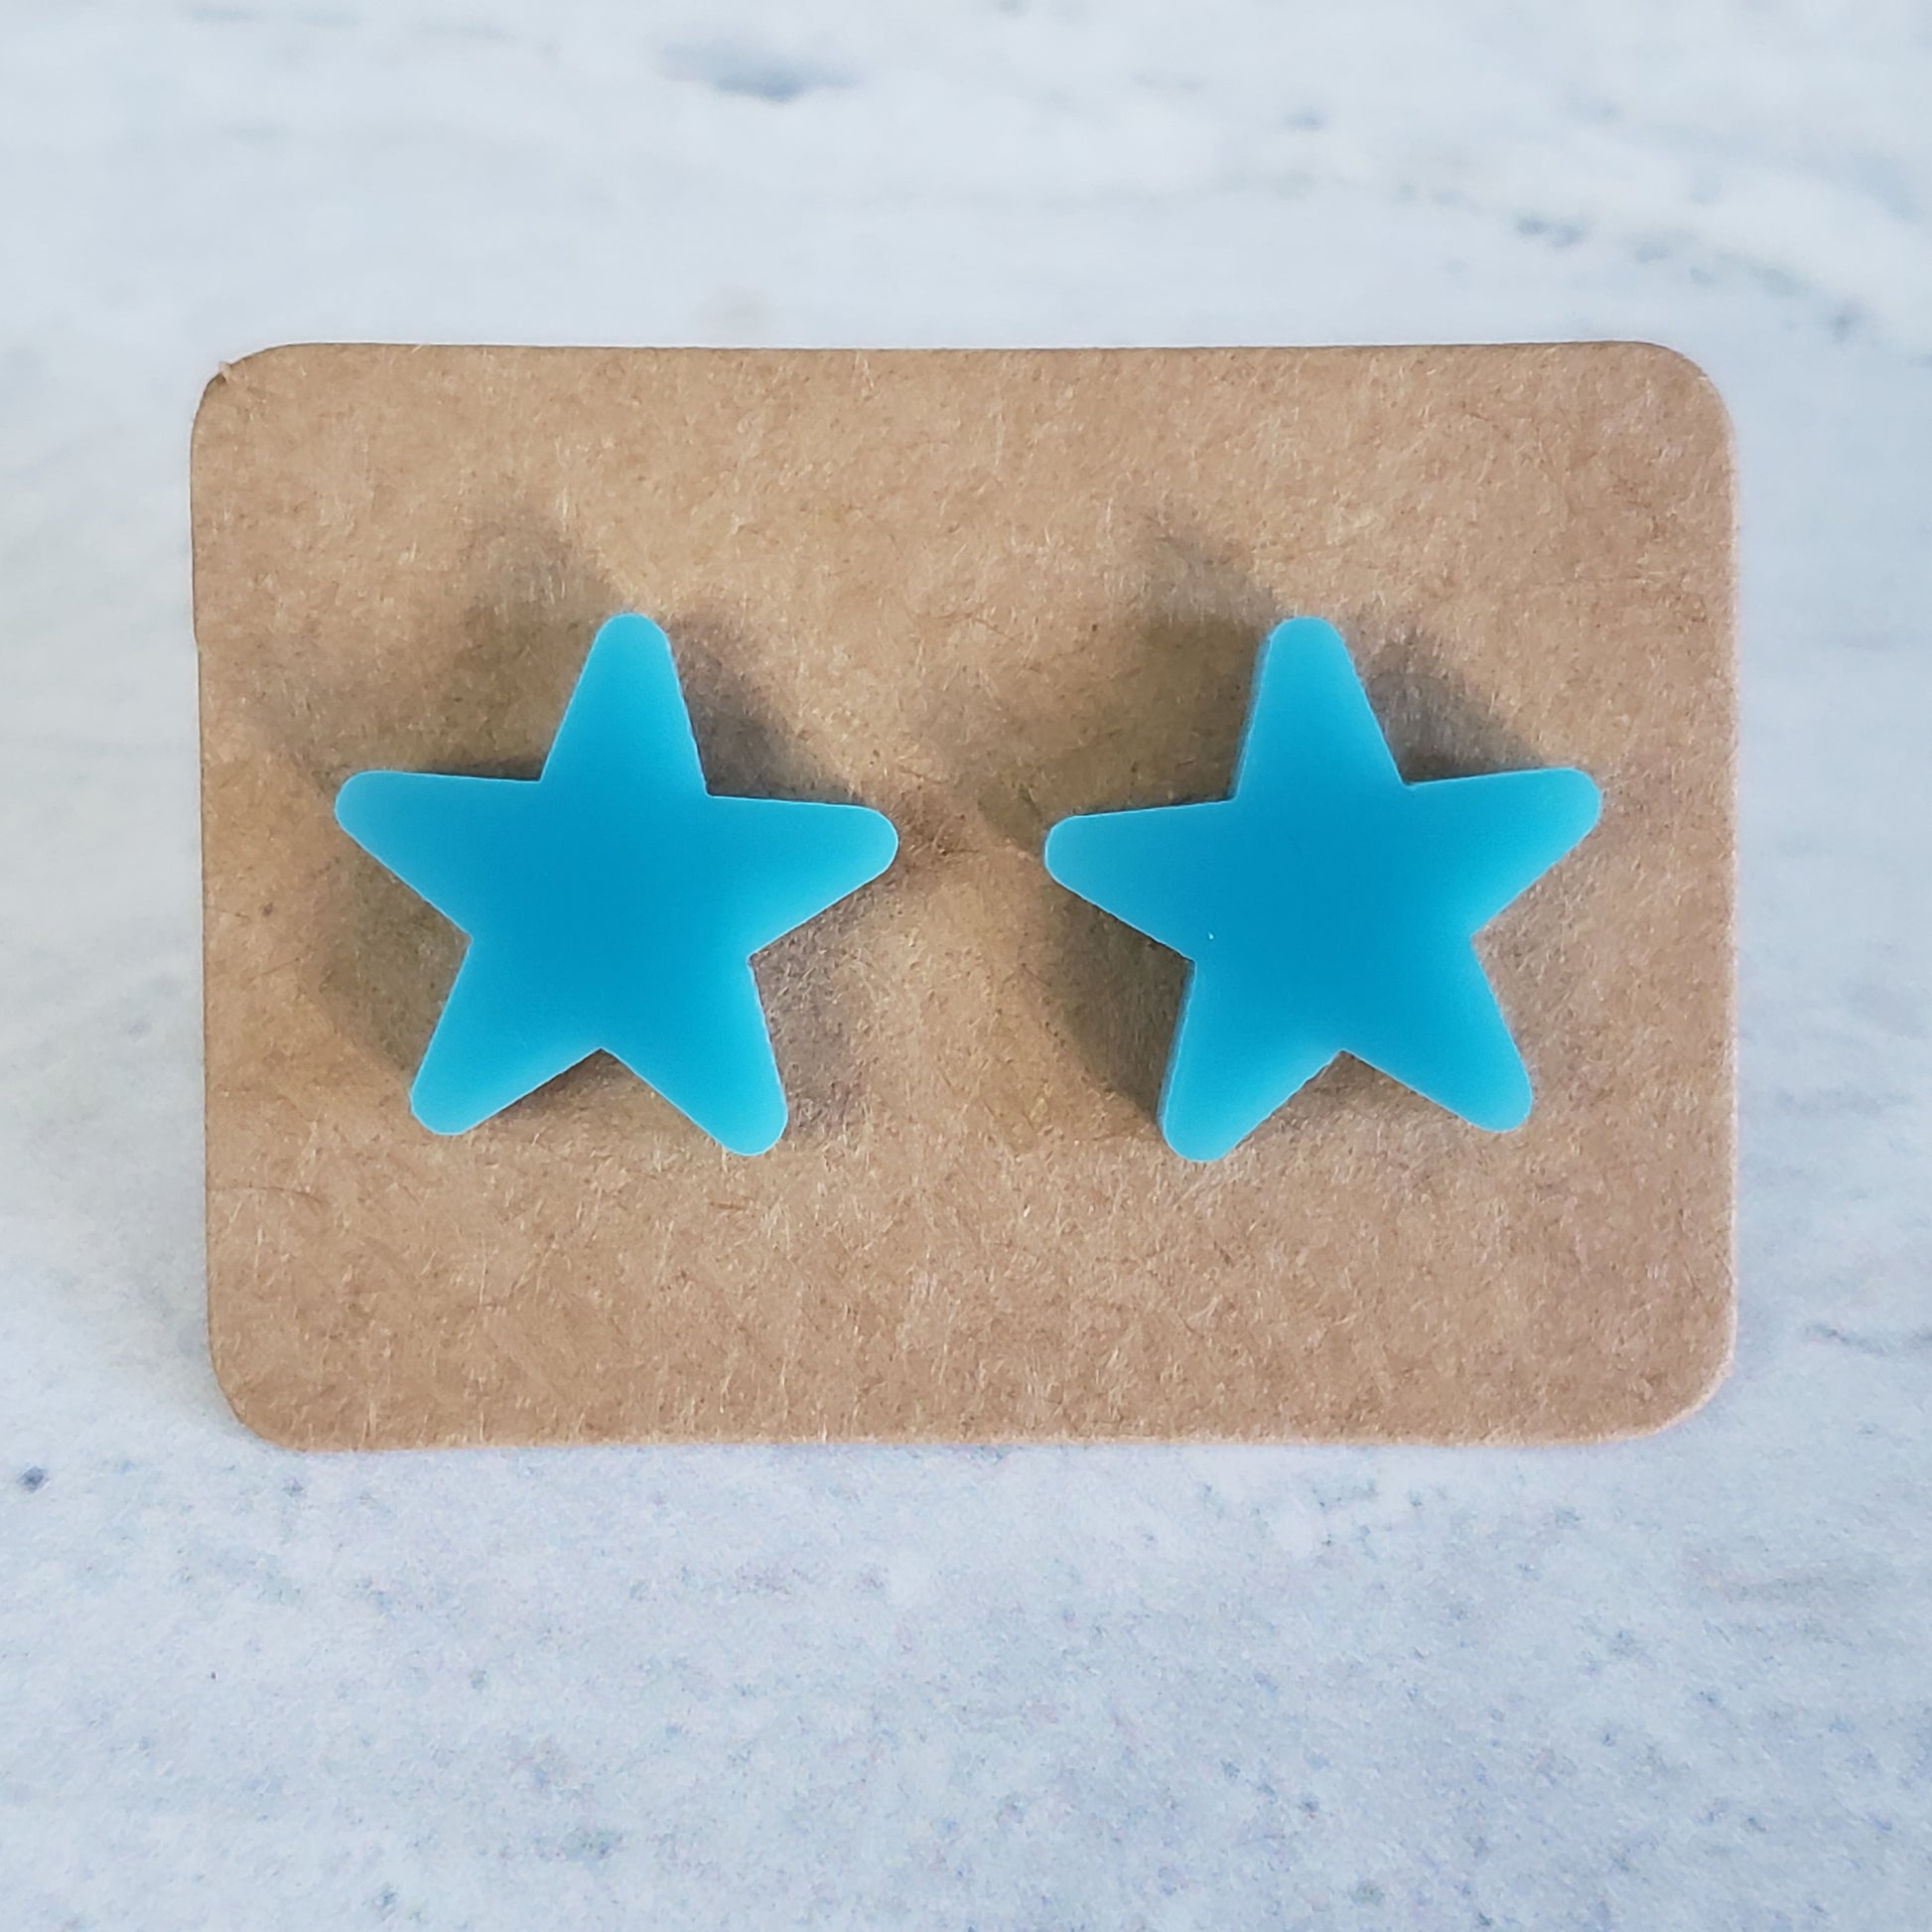 Breakfast blue star stud earrings on earring card